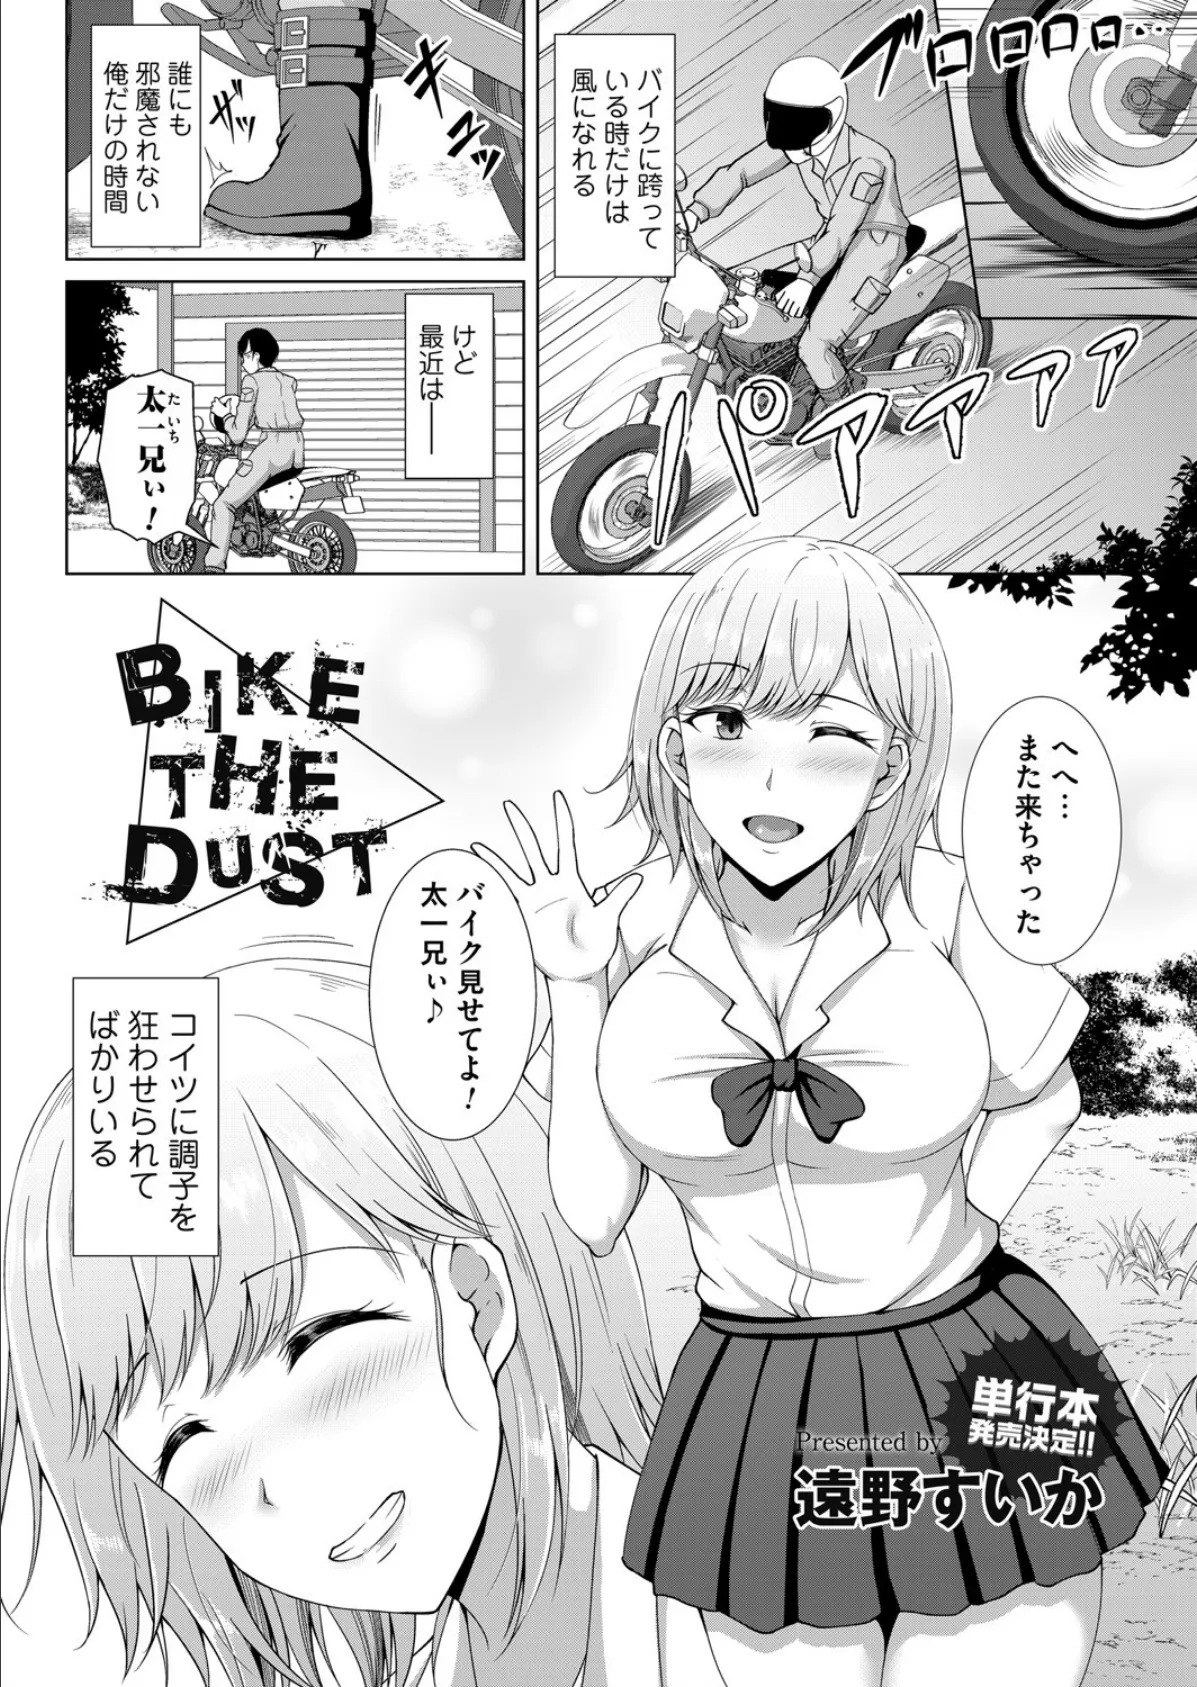 Bike the Dust